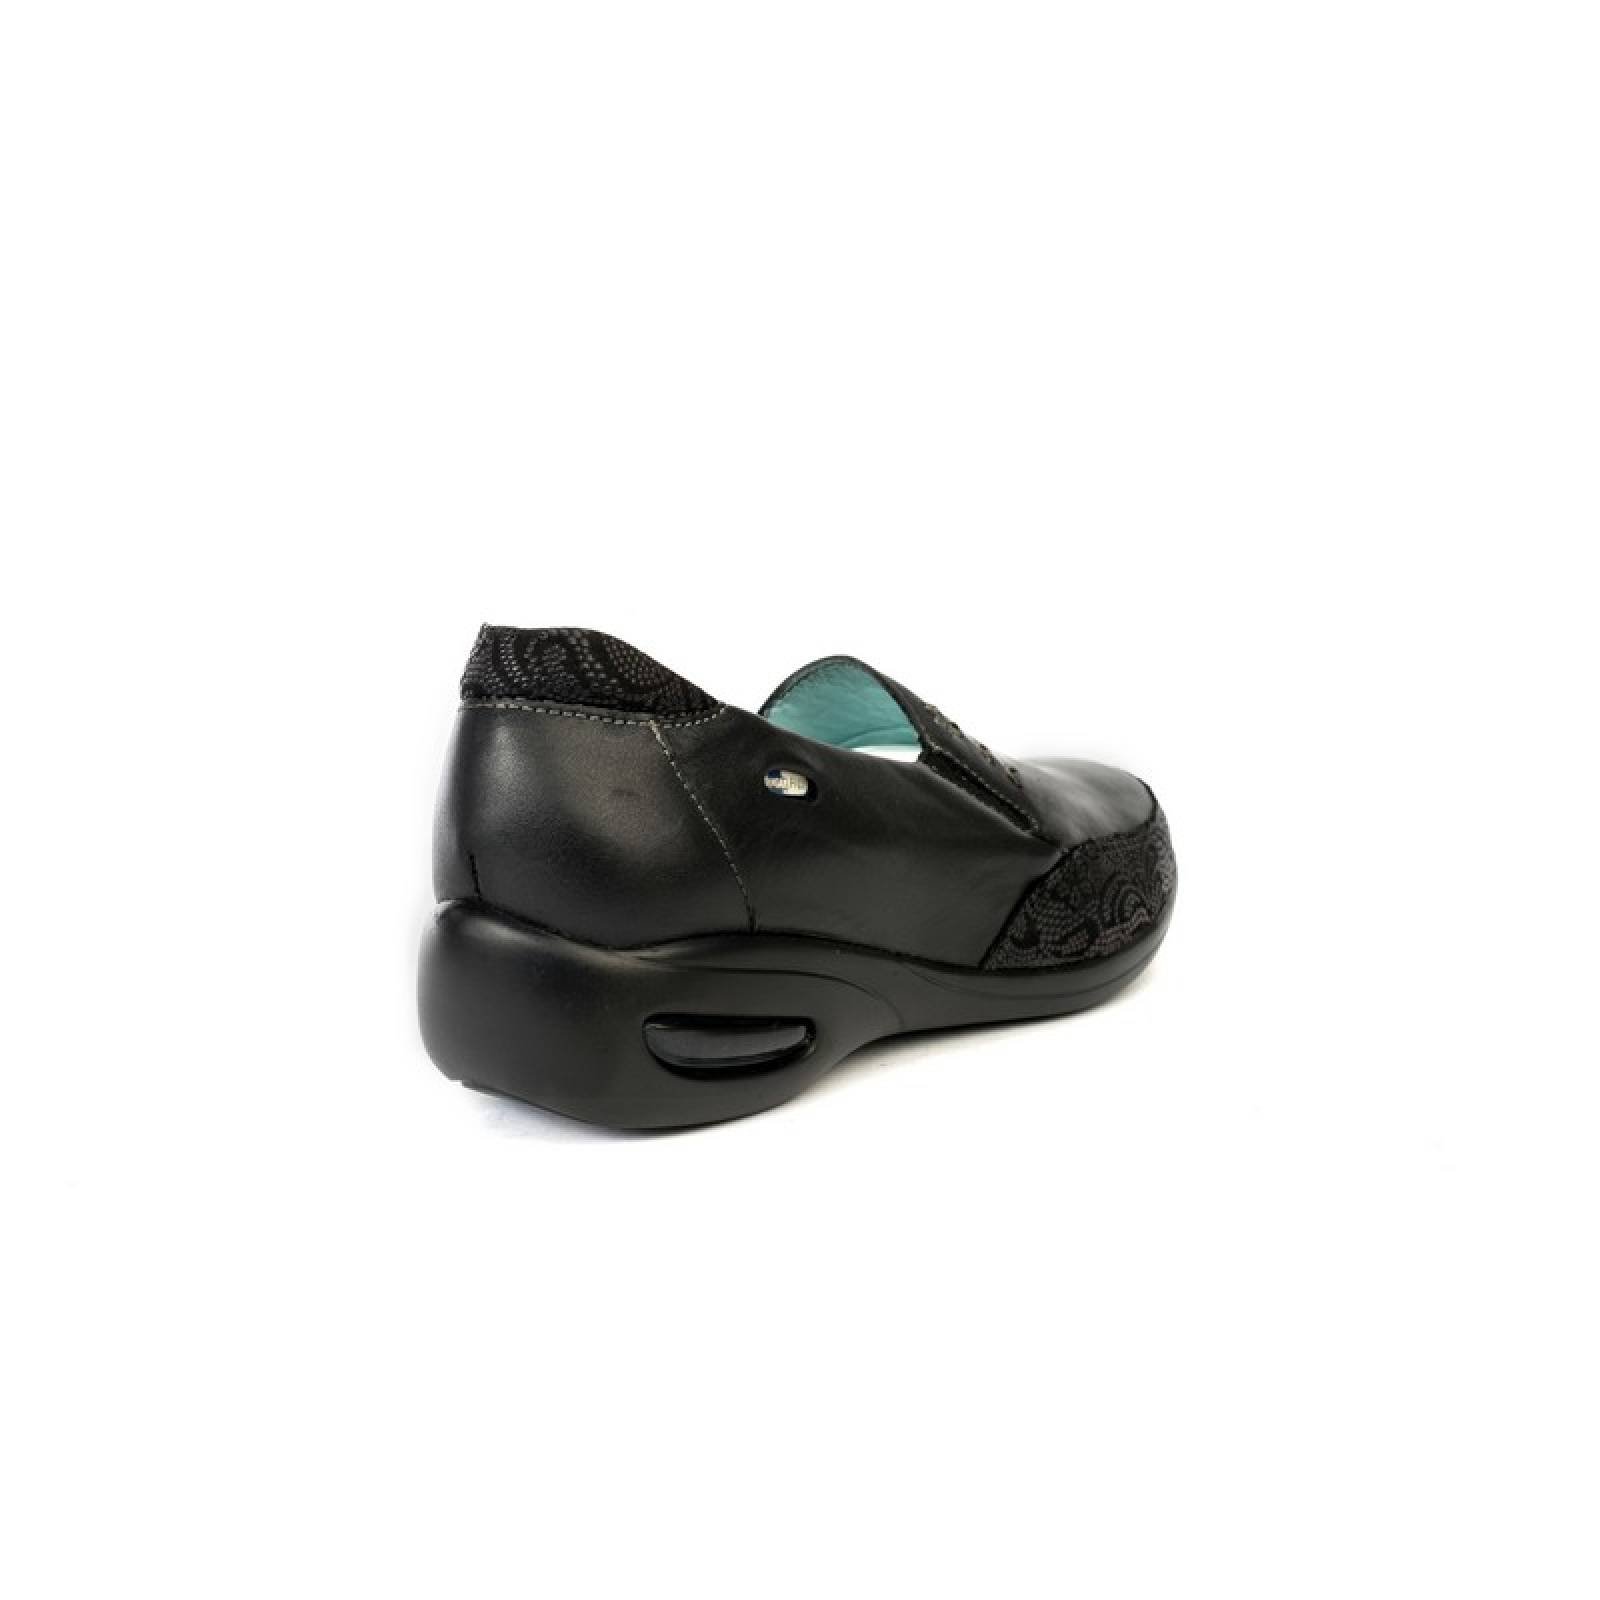 Jarking - Zapato Casual Negro Grabado en la Punta y Tejido Artesanal con Amplitud Especial para Dama